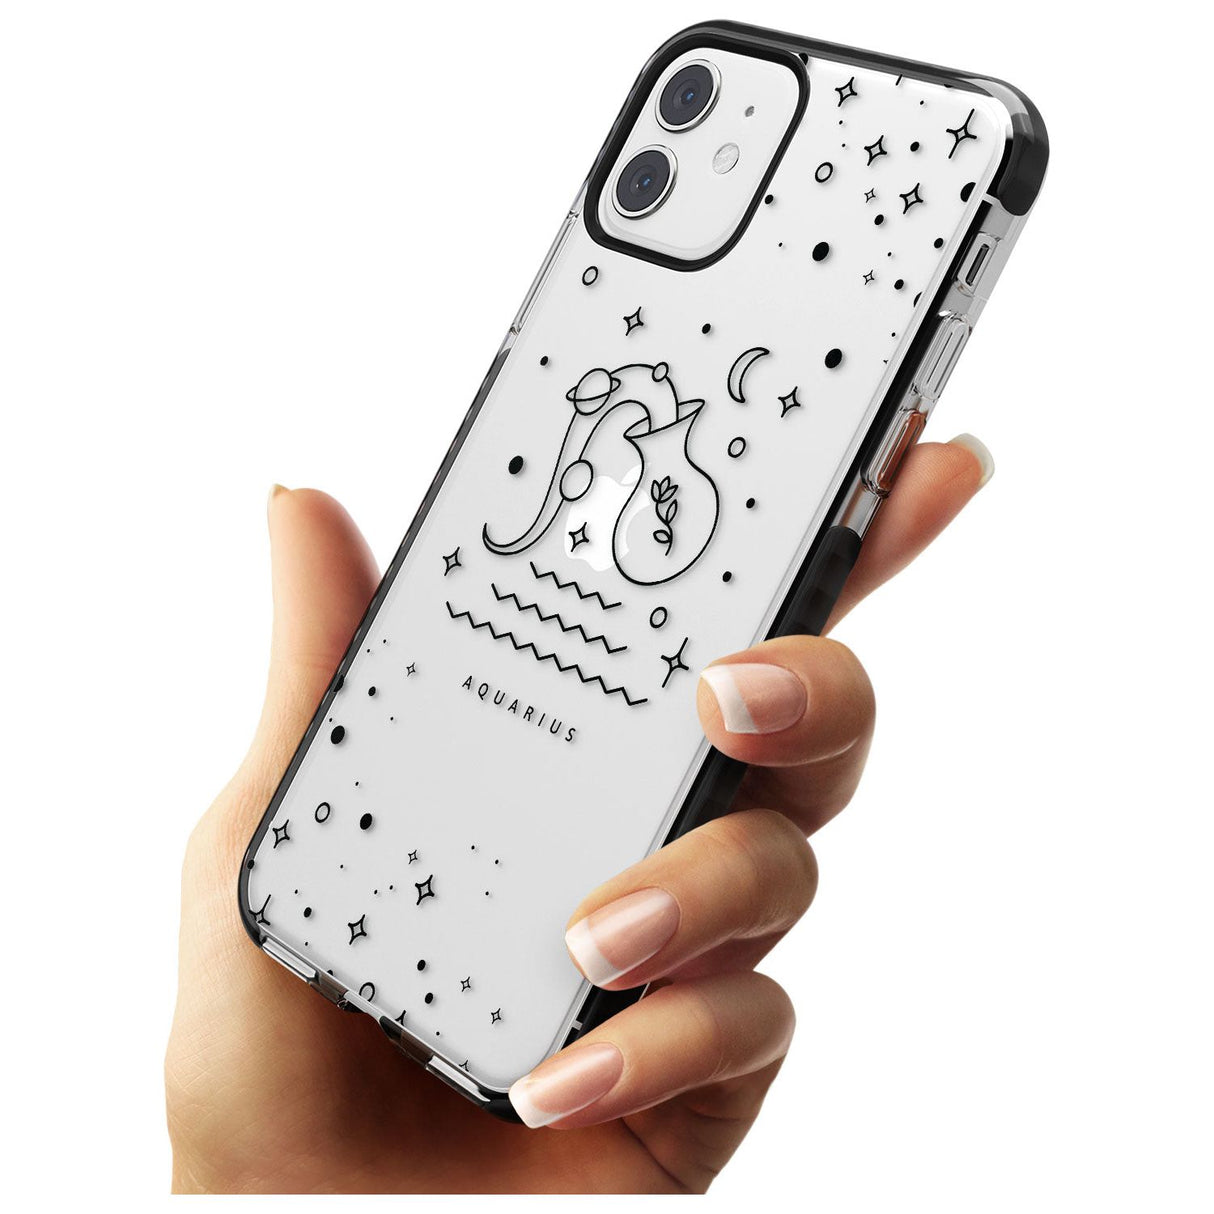 Aquarius Emblem - Transparent Design Black Impact Phone Case for iPhone 11